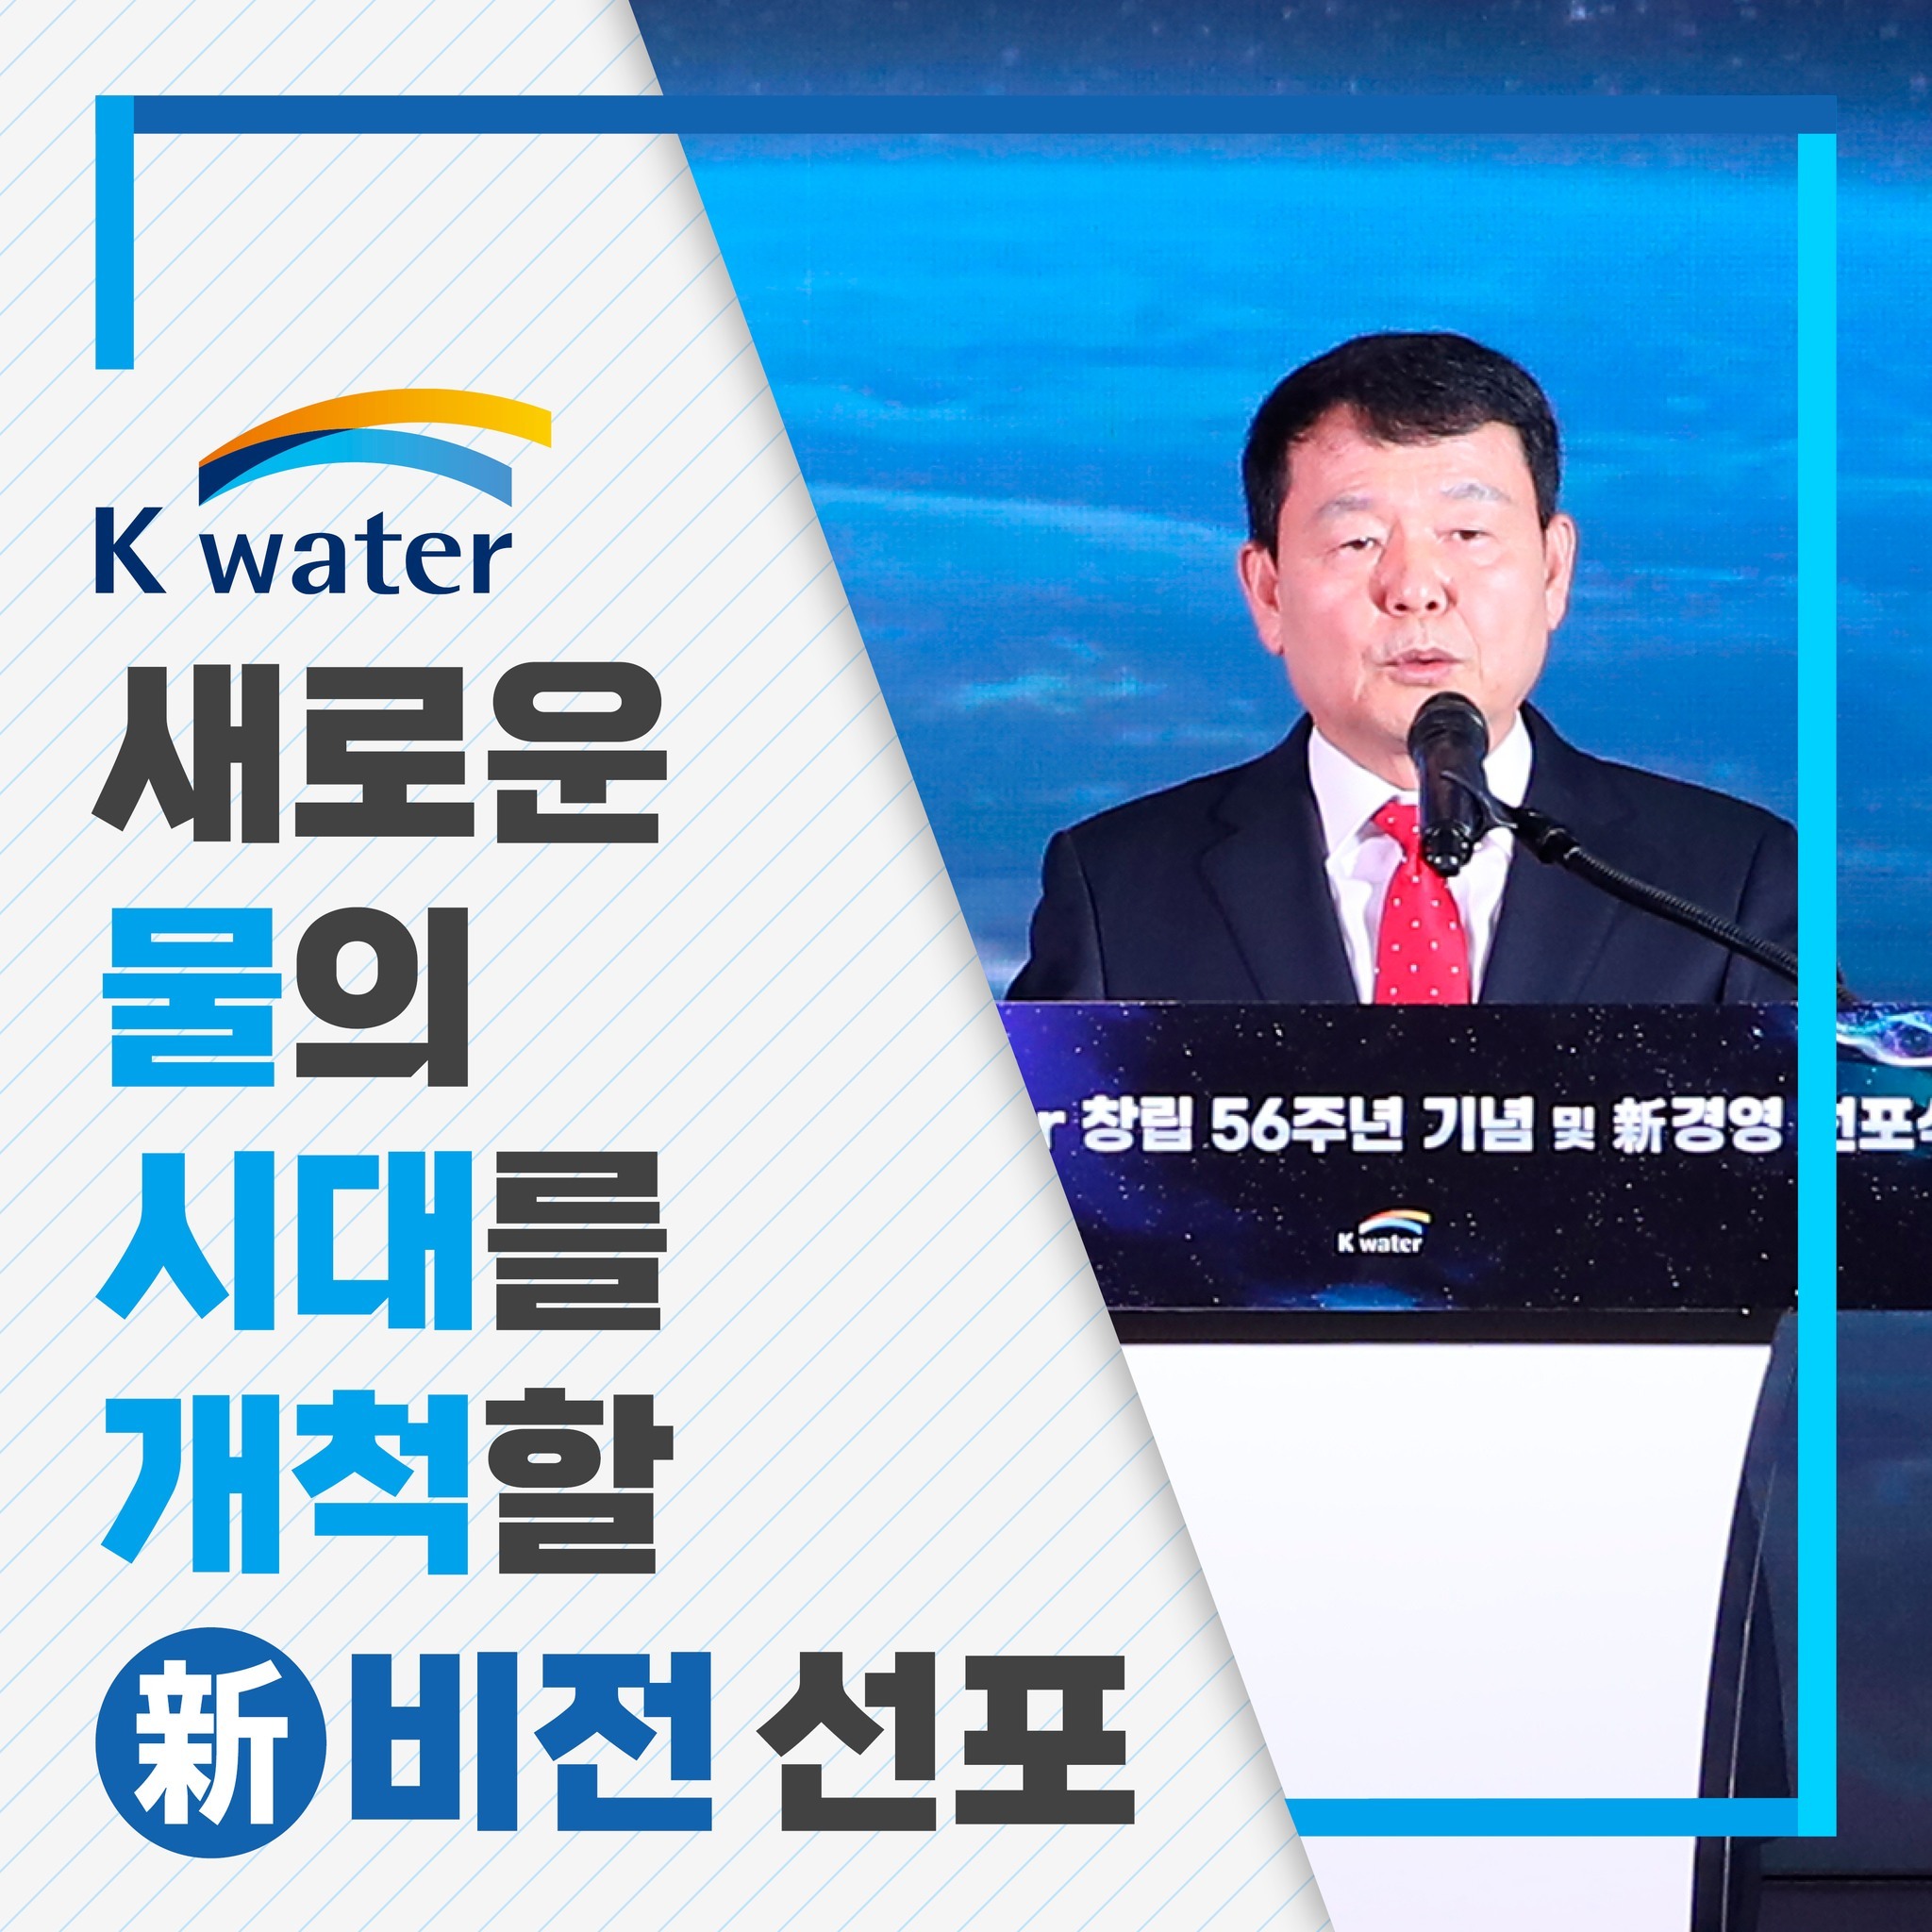 K-water 새로운 물의 시대를 개척할 新비전 선포